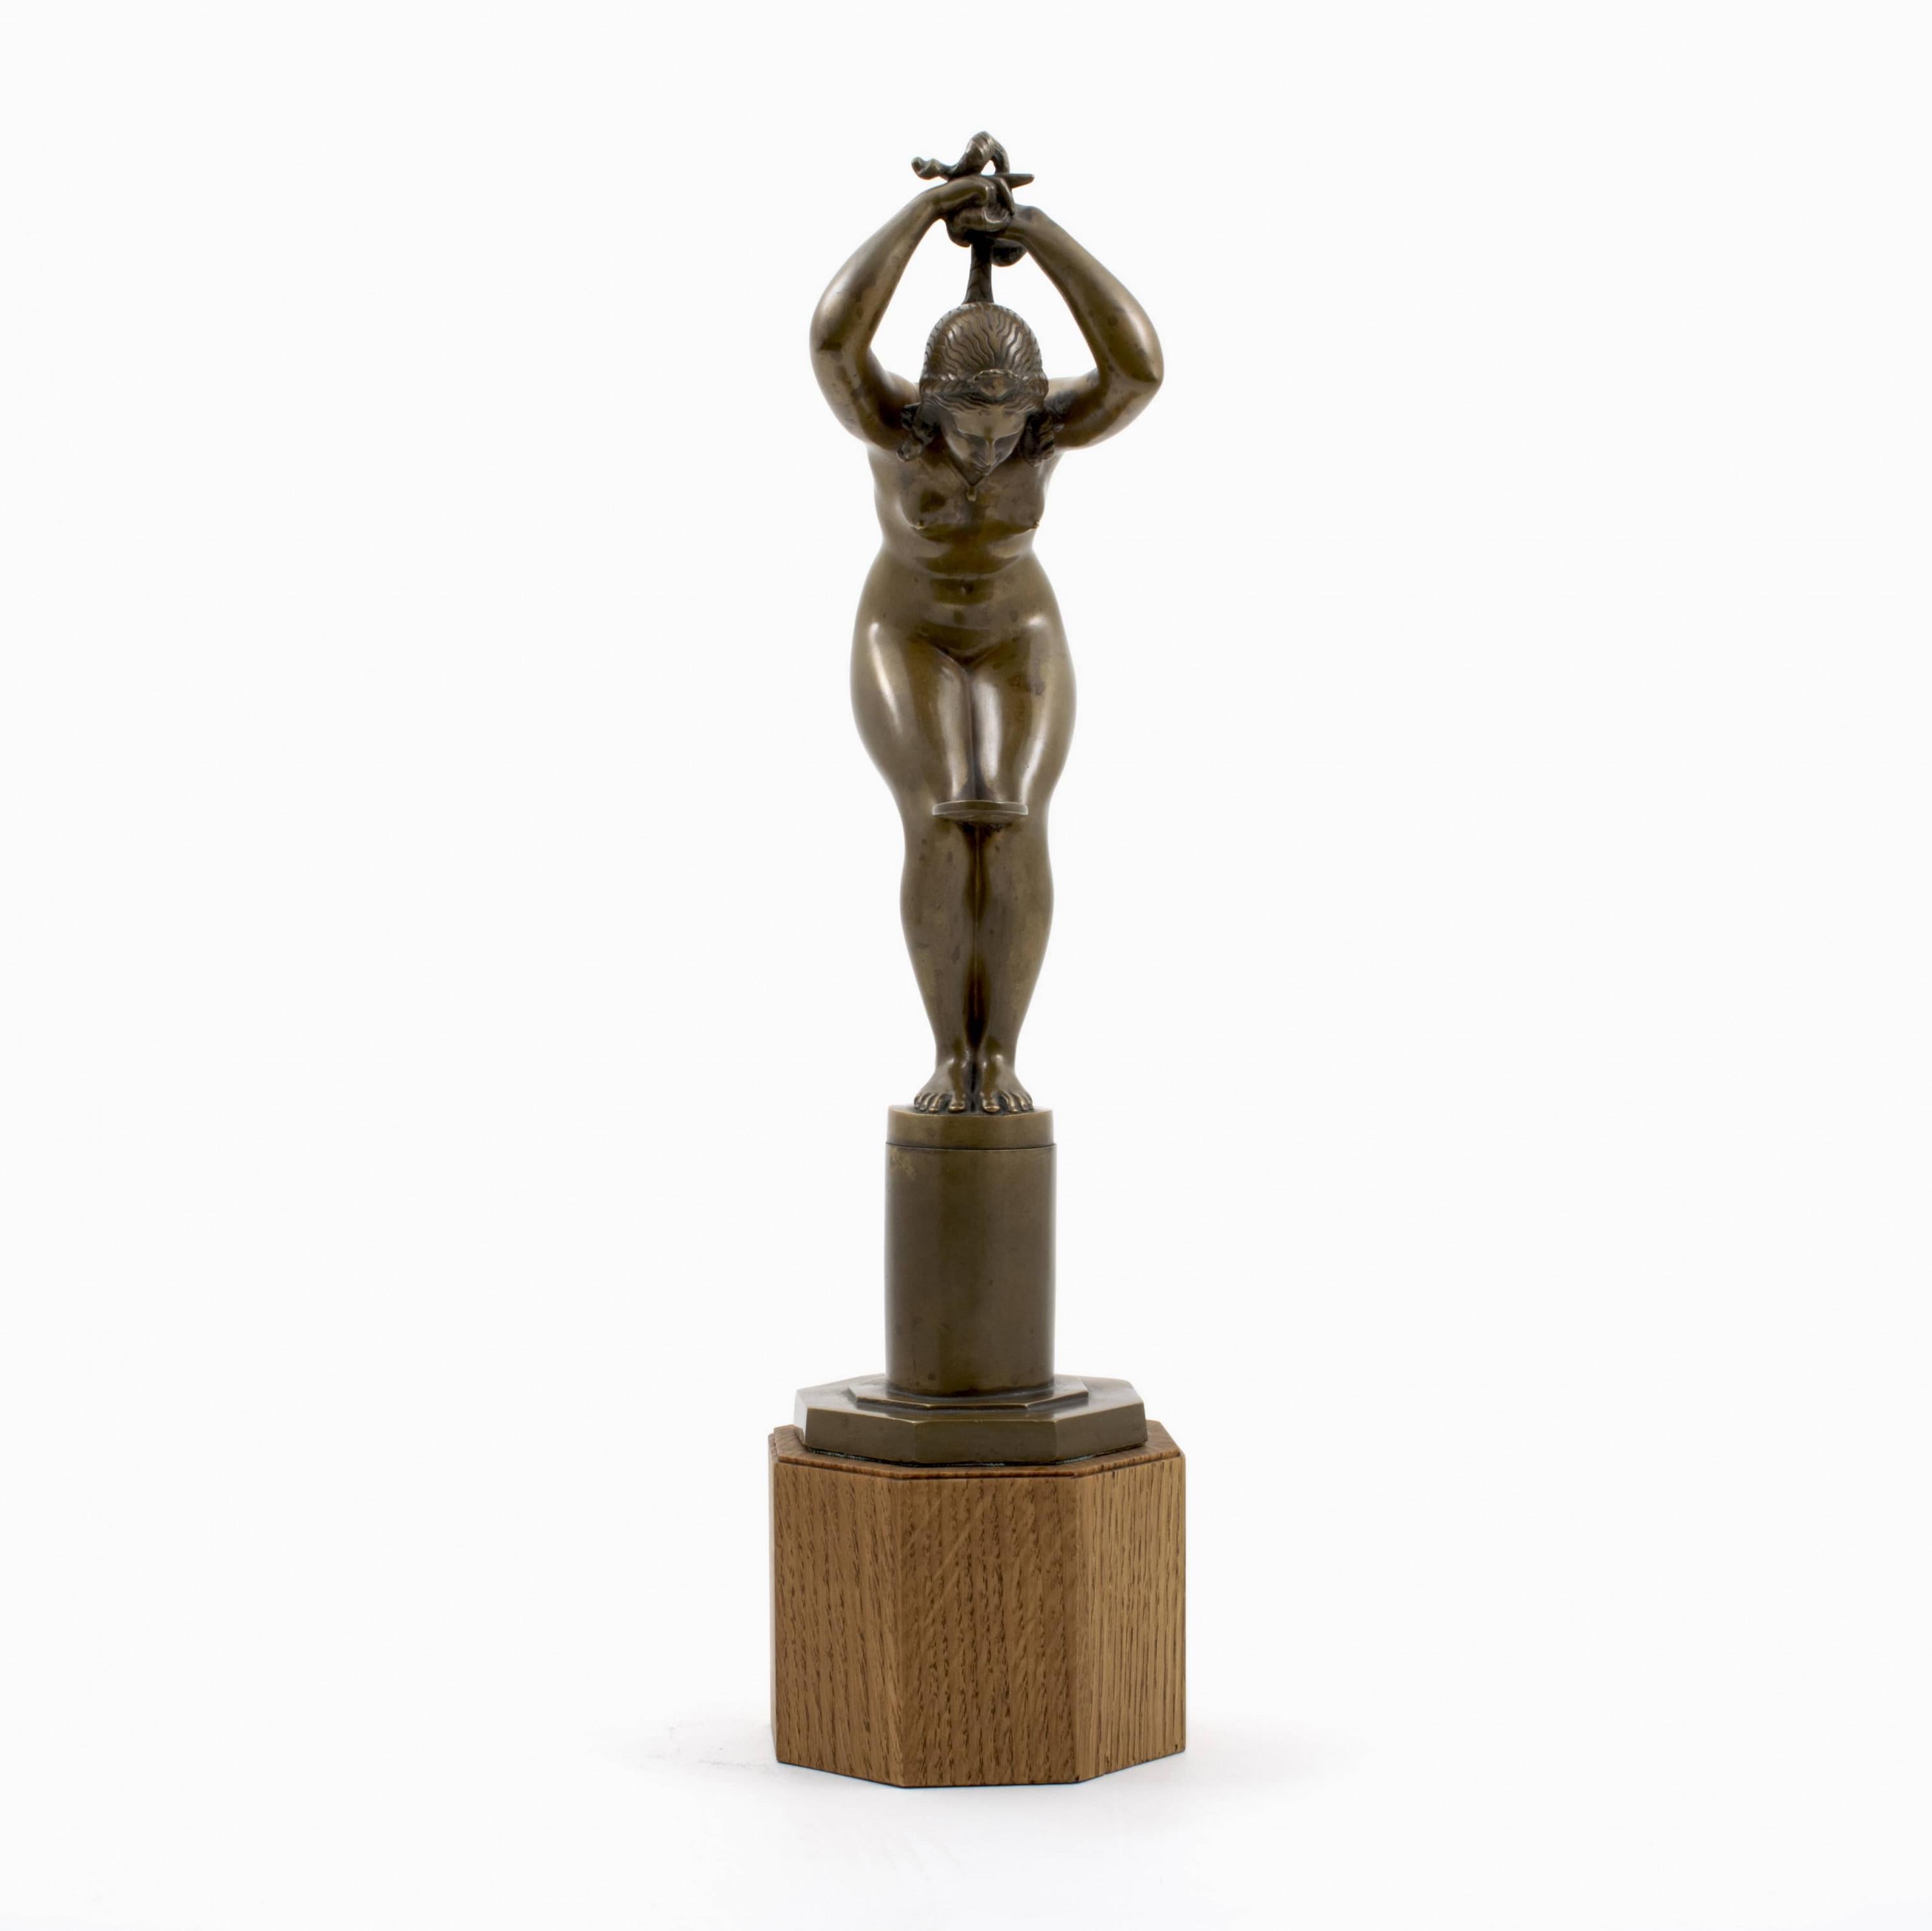 Jens Jacob Bregnø (dänisch 1877-1946).

Patinierte Bronzeskulptur einer nackten Frau, die ihr Haar flechtet und einen Spiegel zwischen den Knien hält.
Auf dem Sockel signiert JJB.

Hergestellt von L. Rasmussen, Kopenhagen ca. 1930.
Auf